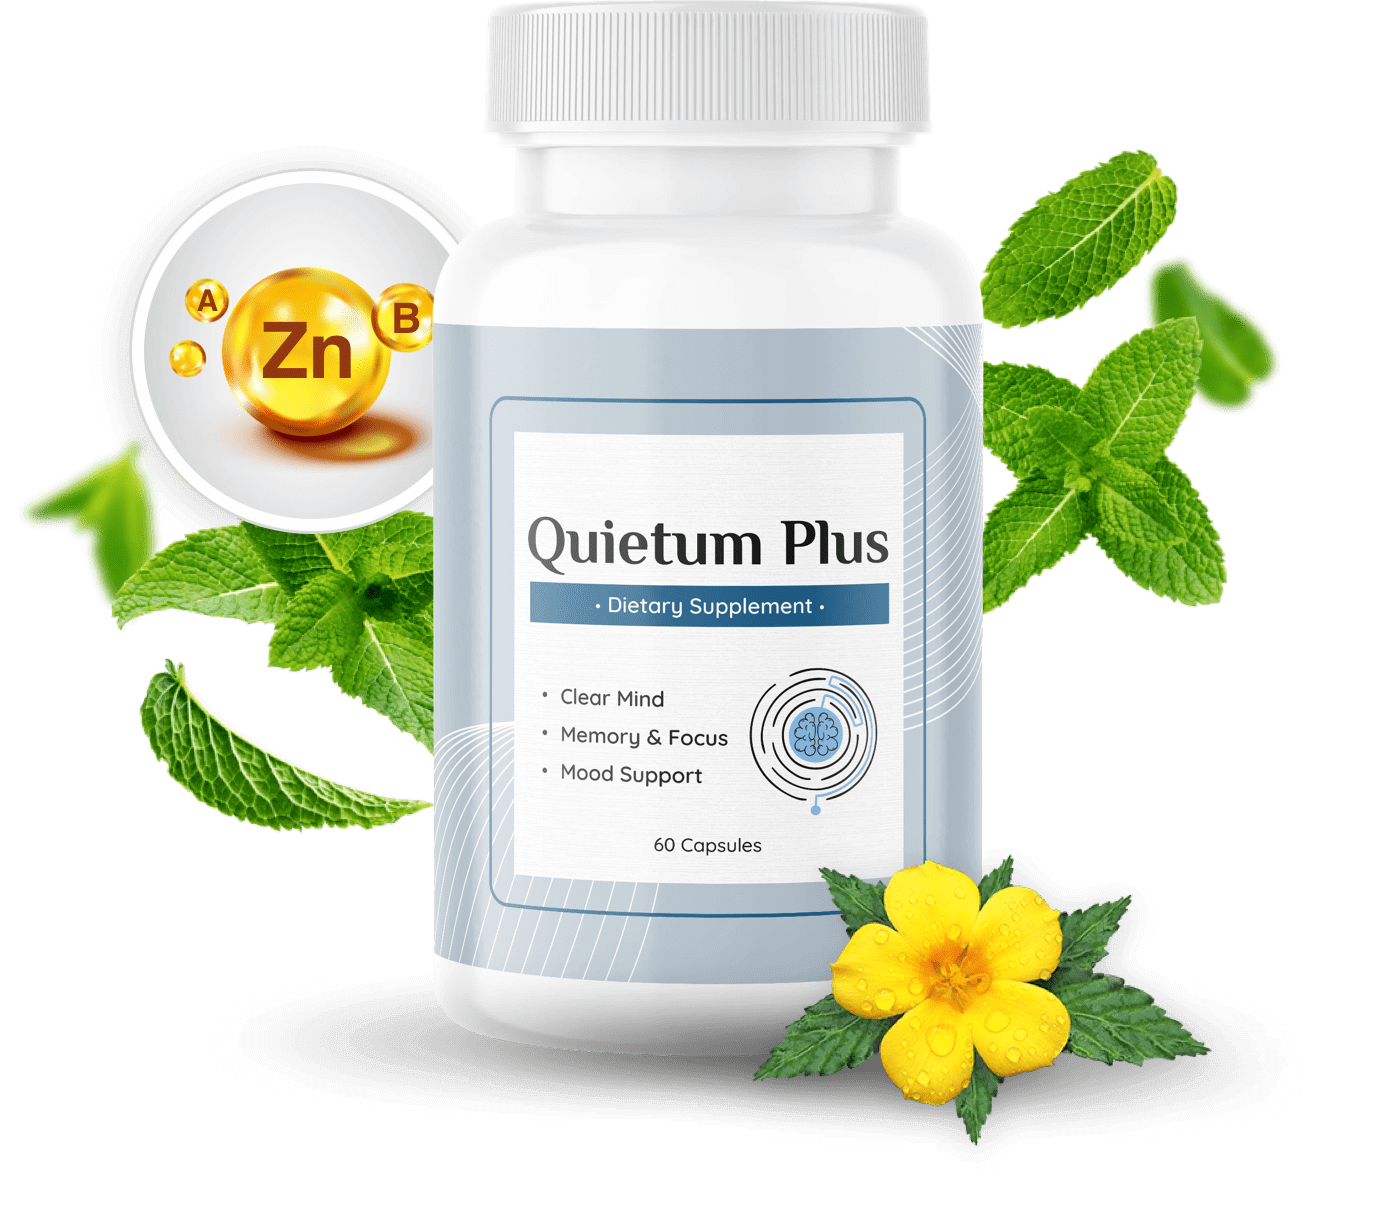 Natural Ingredients Used in Quietum Plus Supplement